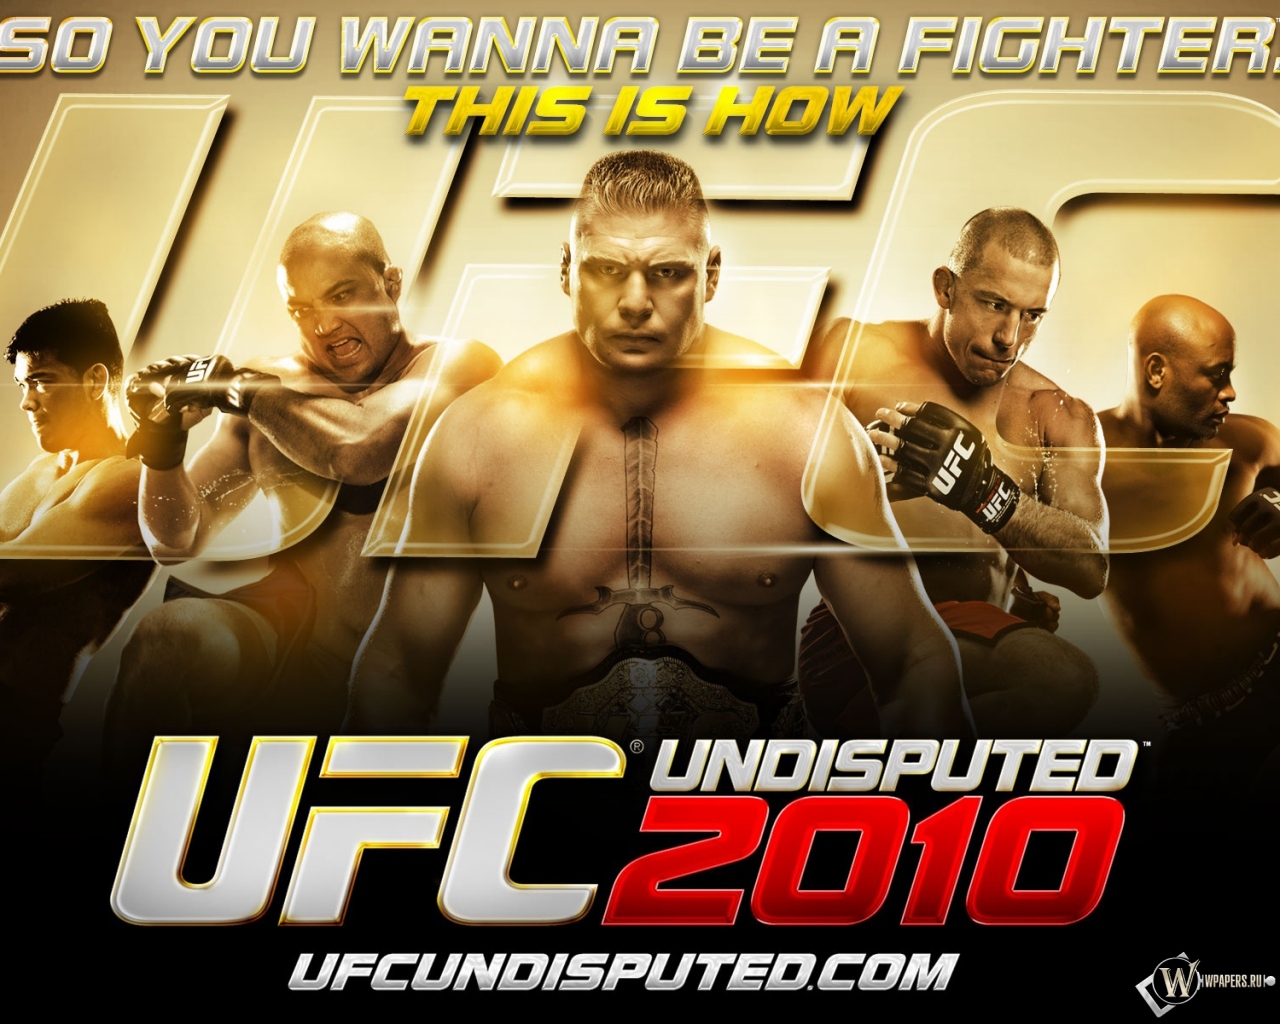 UFC 2010 1280x1024